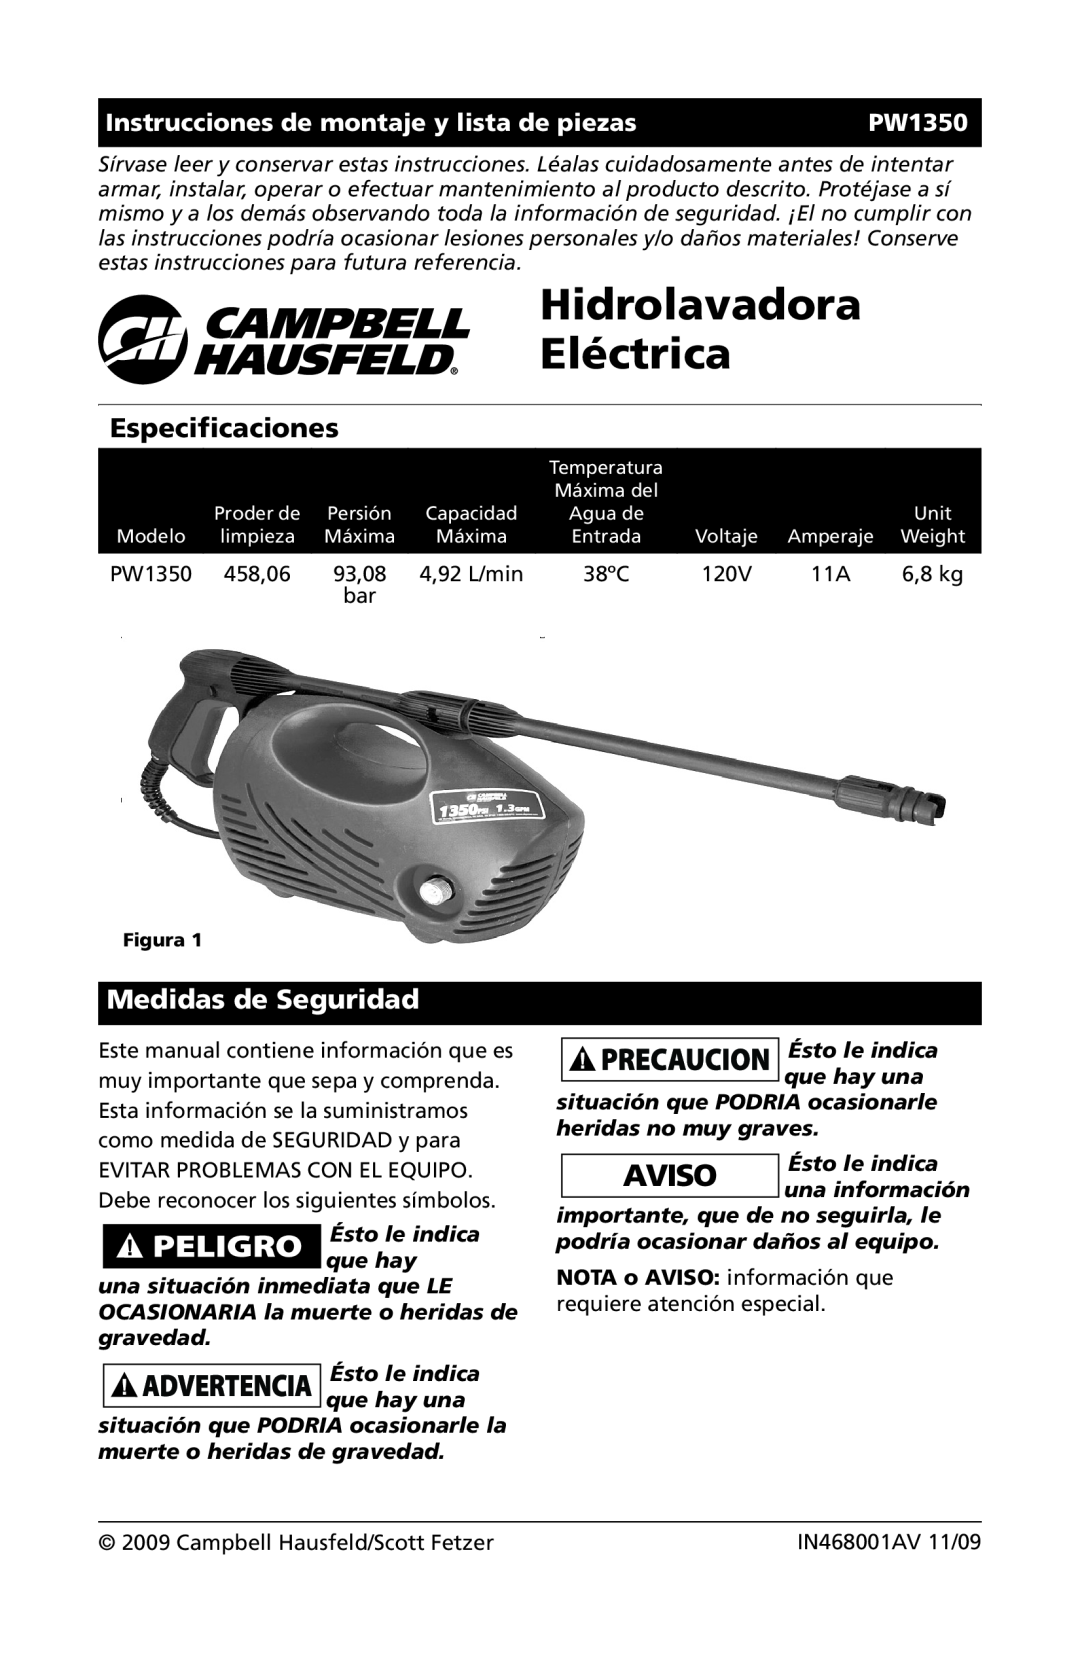 Campbell Hausfeld IN468001AV Hidrolavadora Eléctrica, Especificaciones, Medidas de Seguridad, 93,08, PW1350, 6,8 kg 